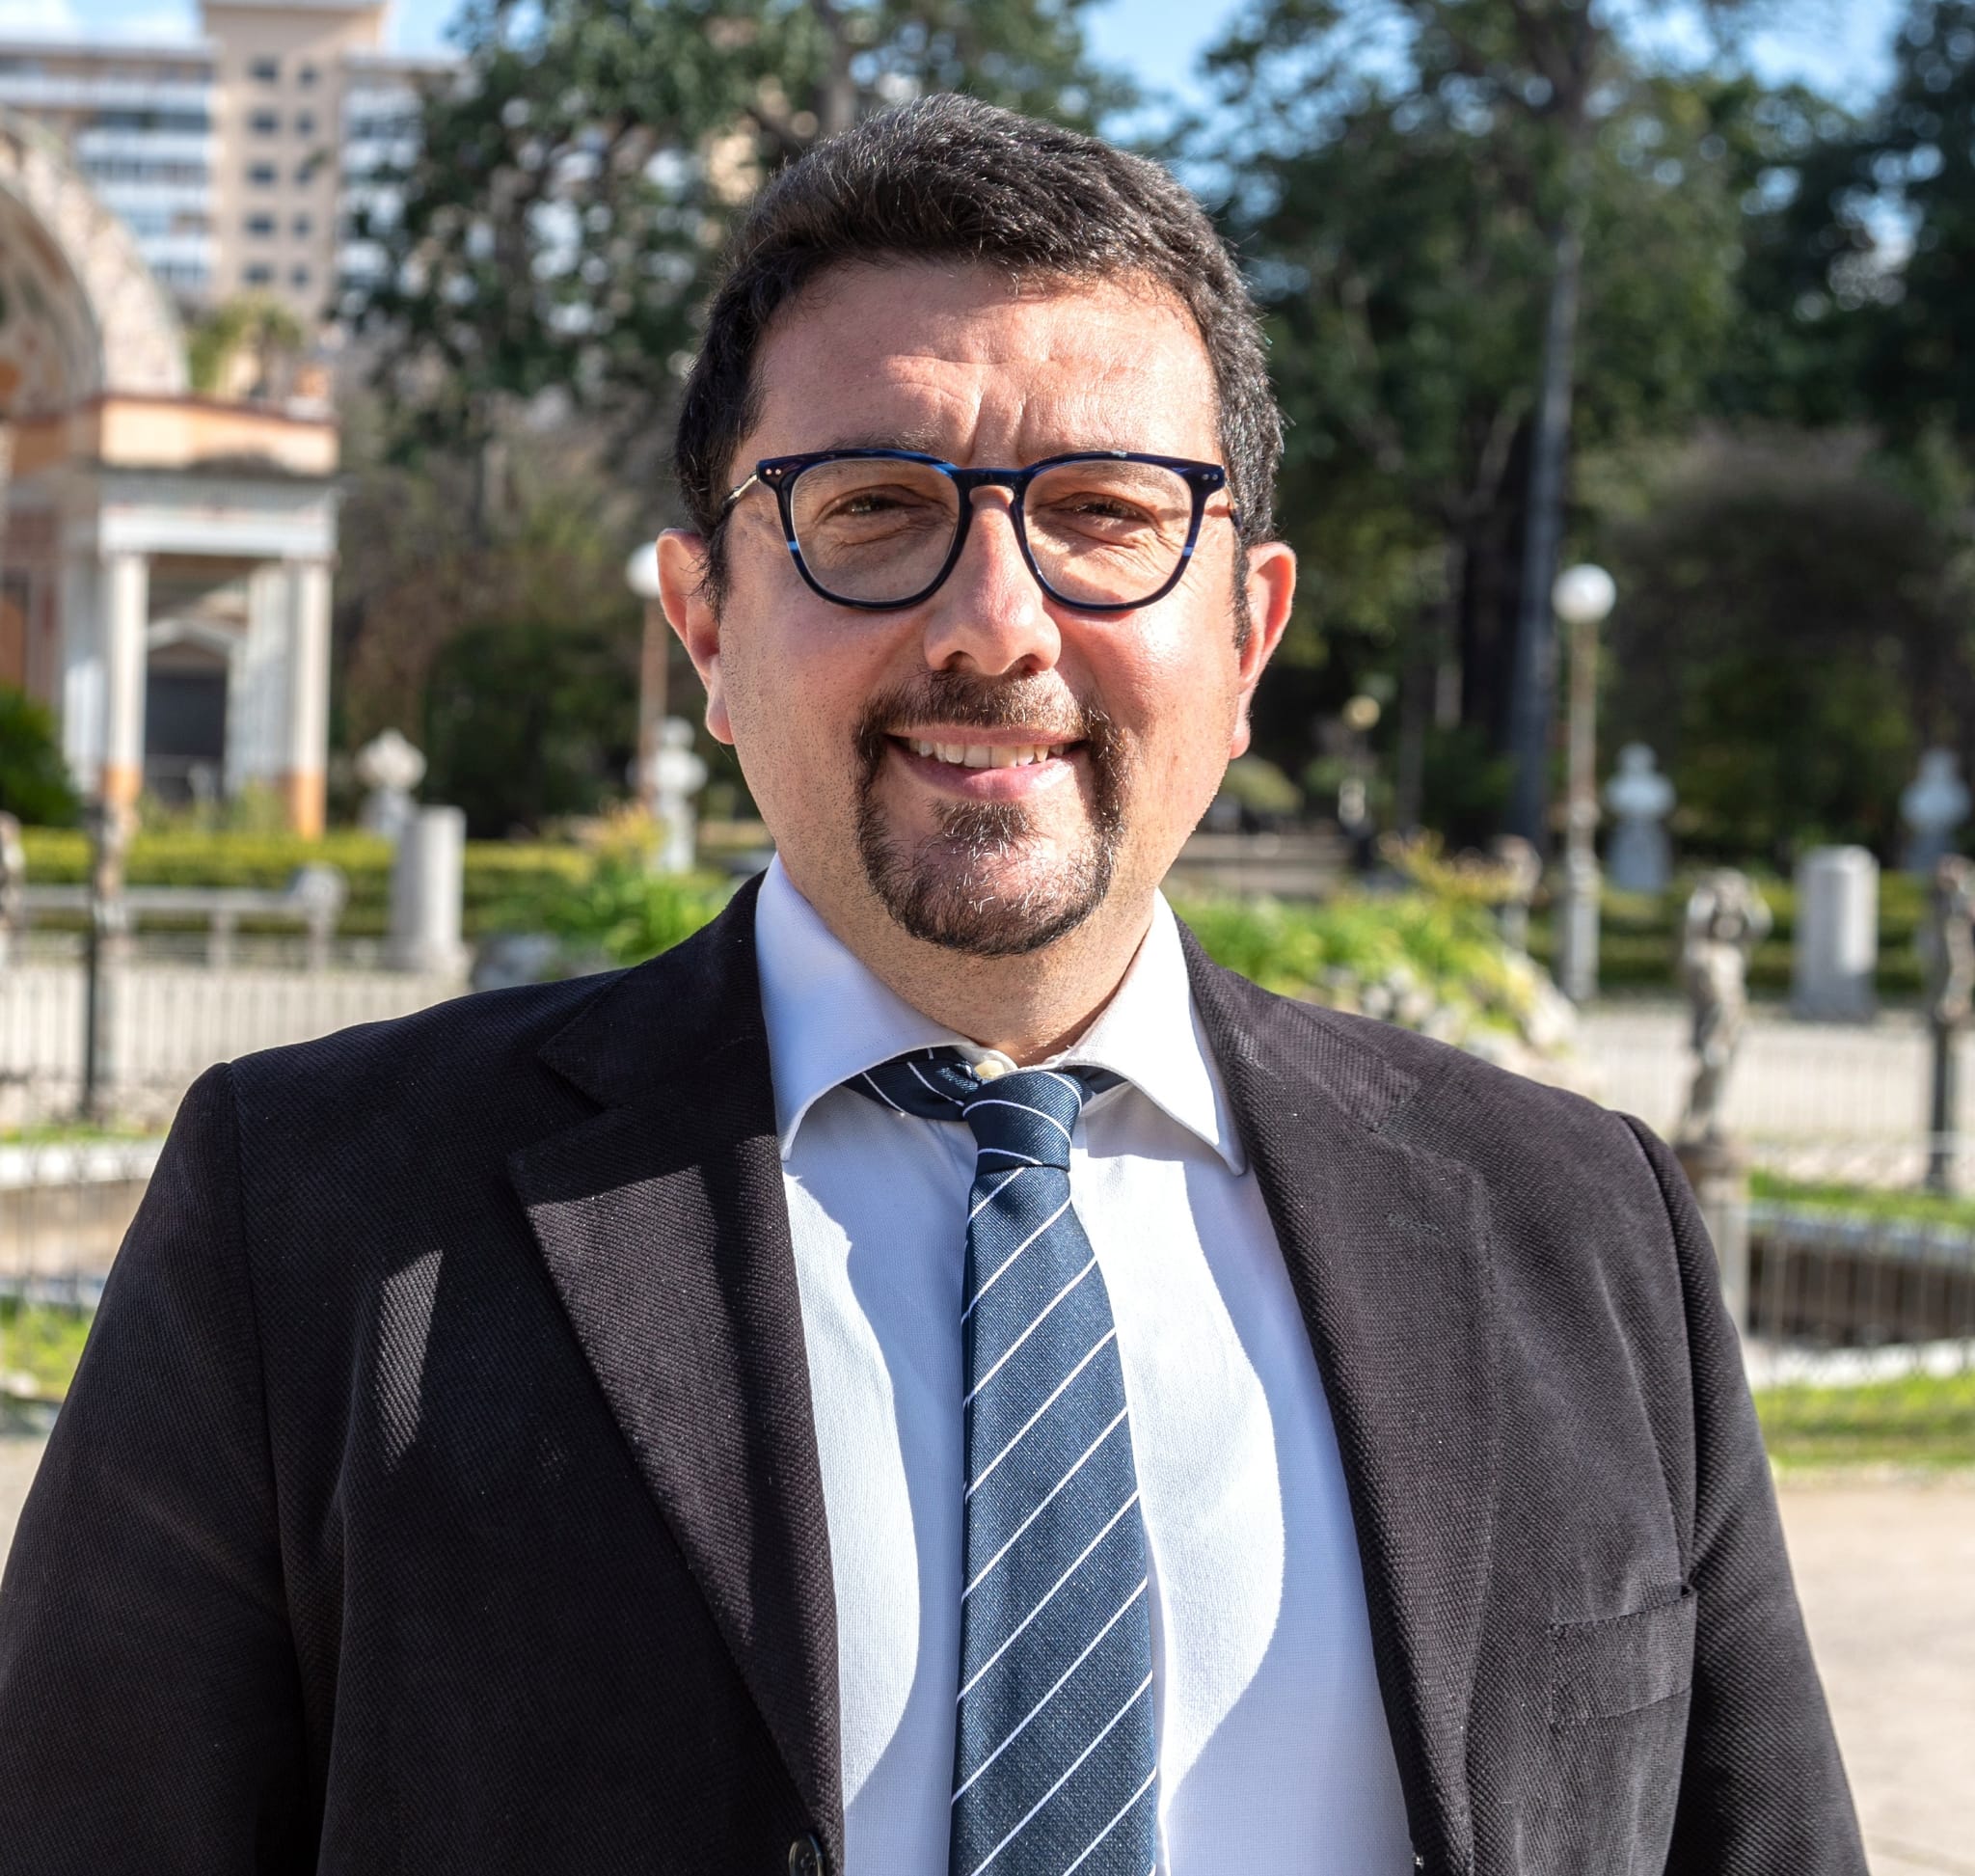 L'ex consigliere del Comune di Palermo descrive così l'aumento del gettone